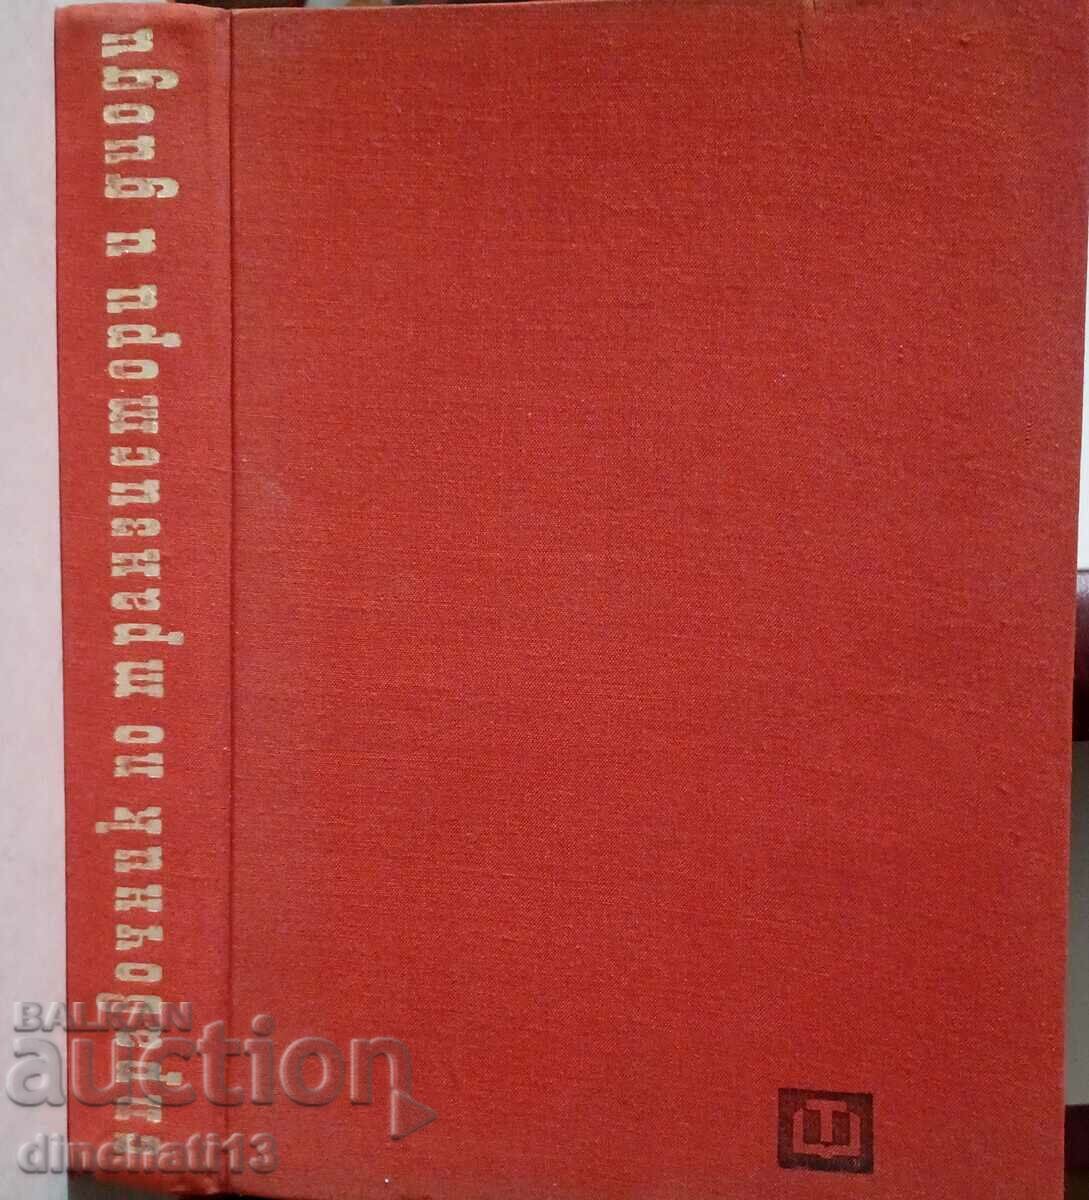 Handbook of transistors and diodes: Atanasov, Kunchev